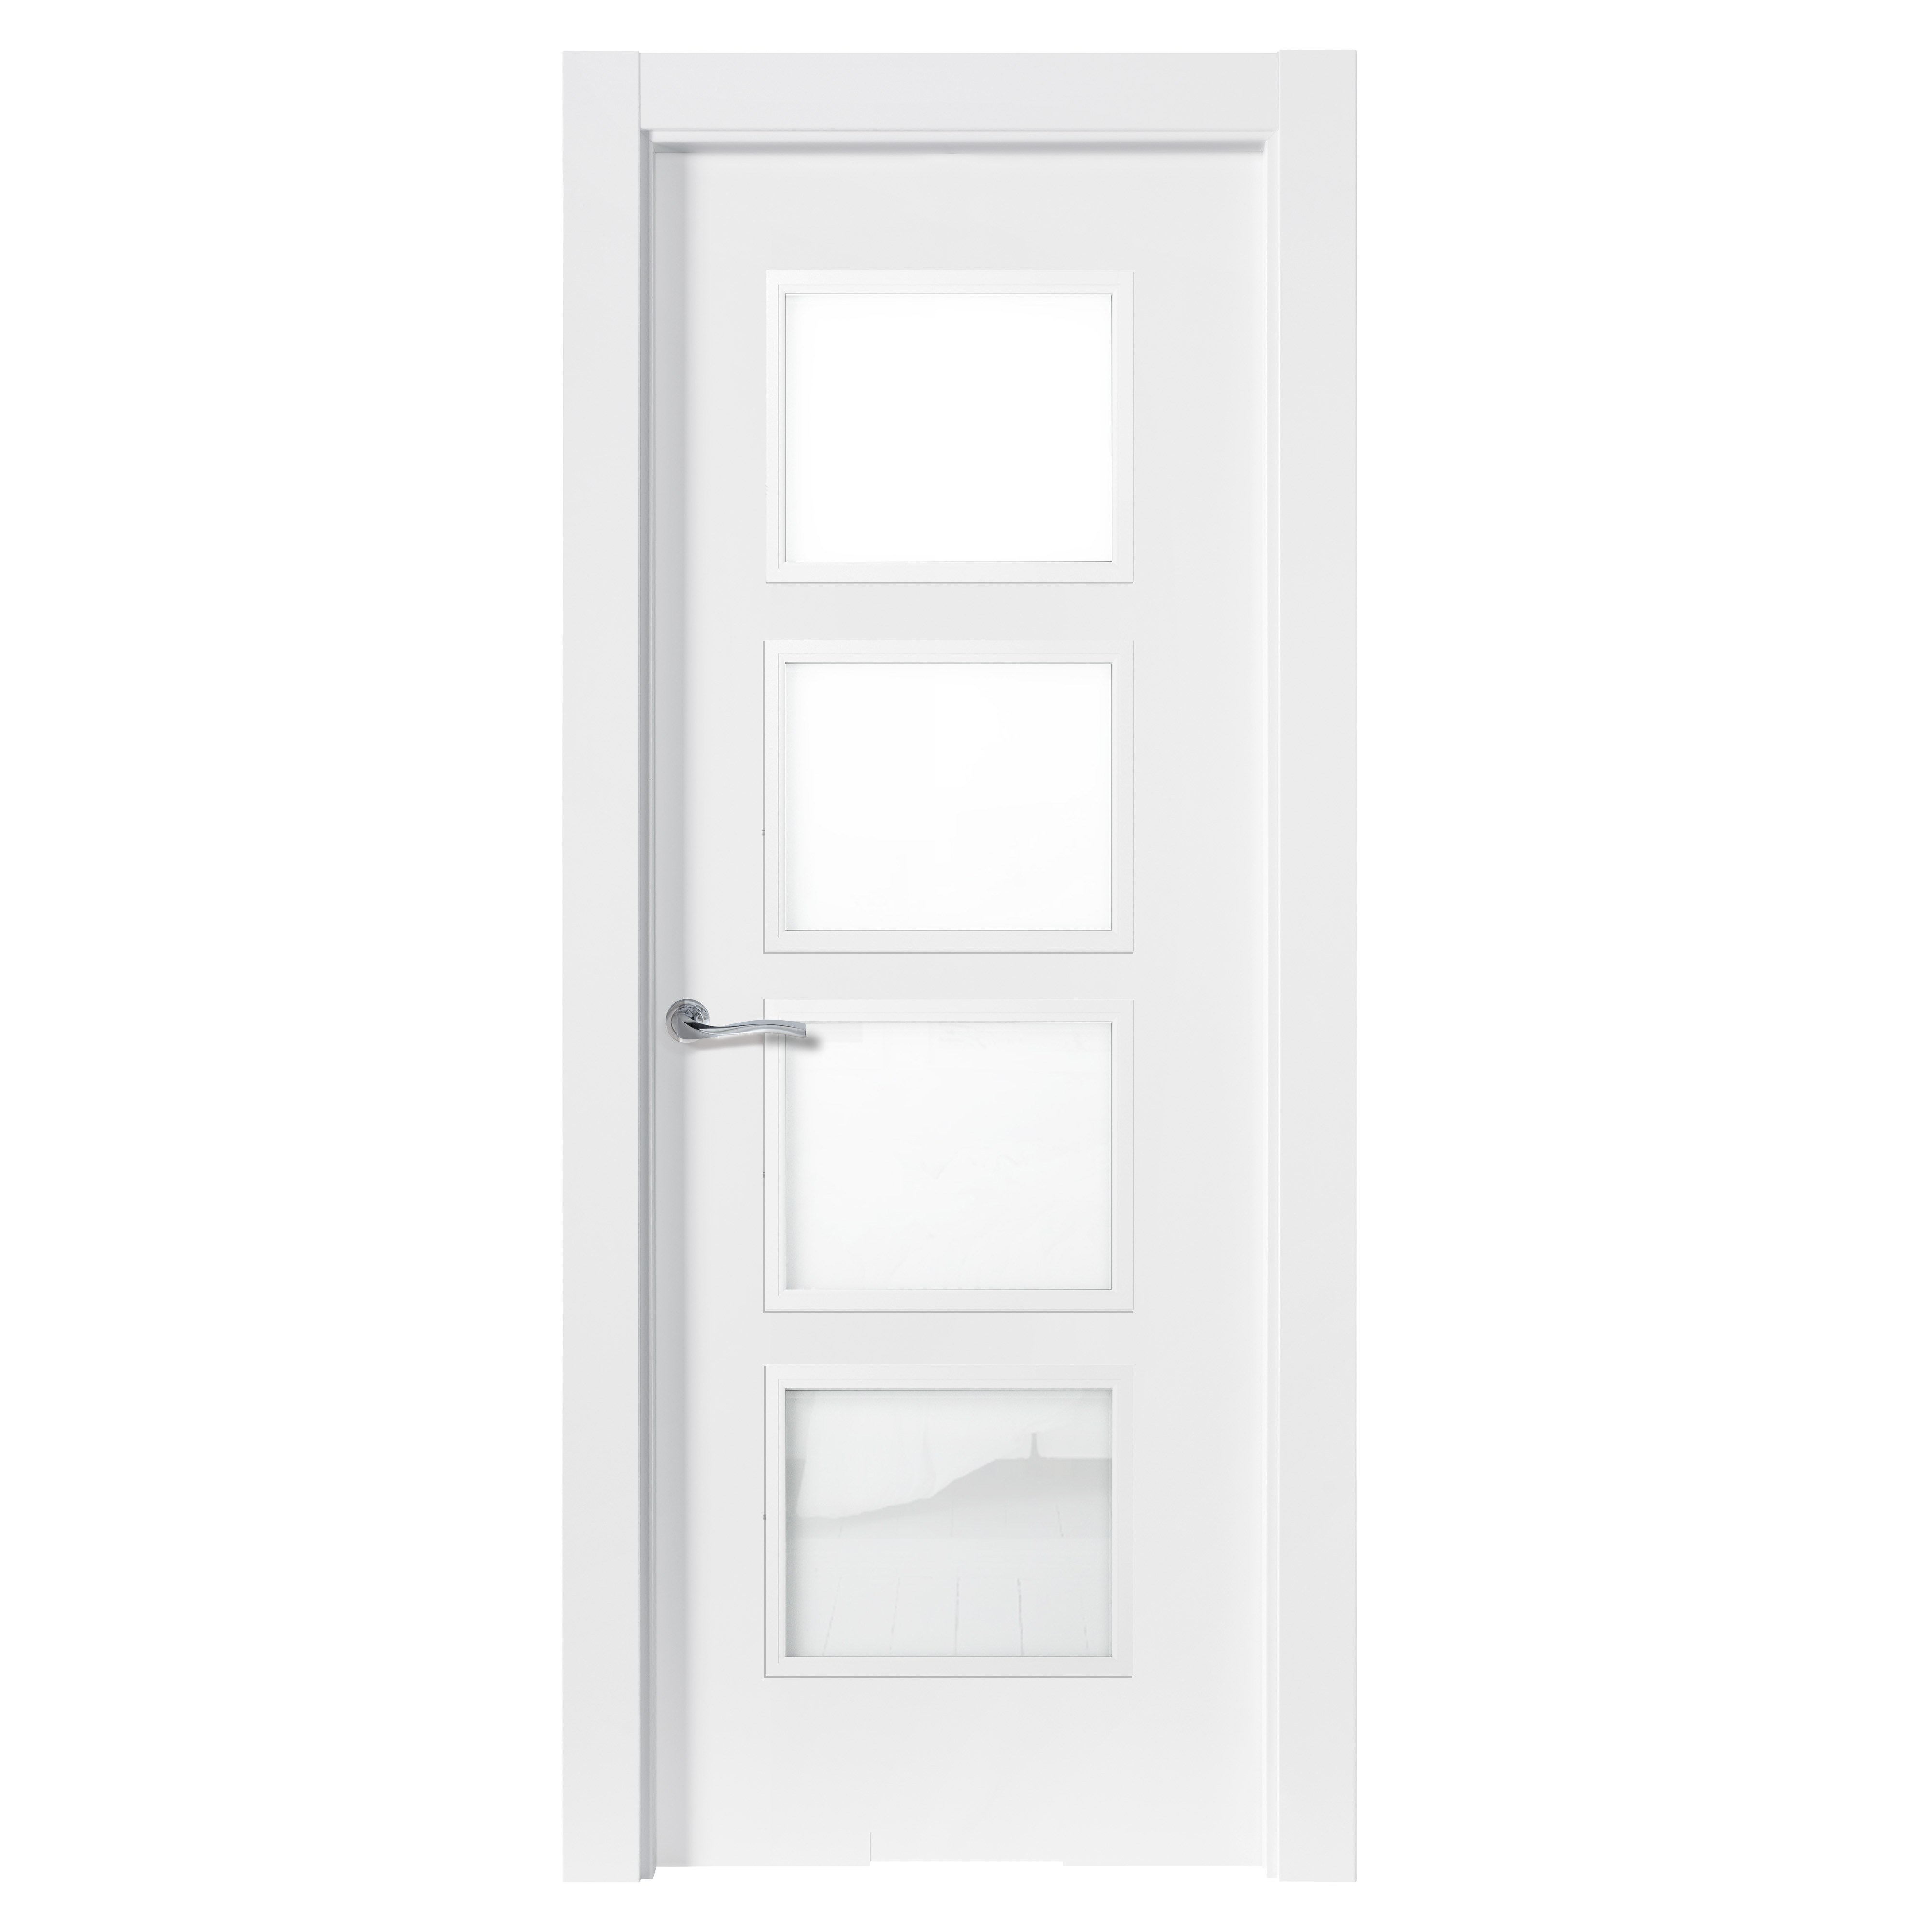 Puerta abatible lucerna blanca premium con cristal blanco izquierda de 82.5